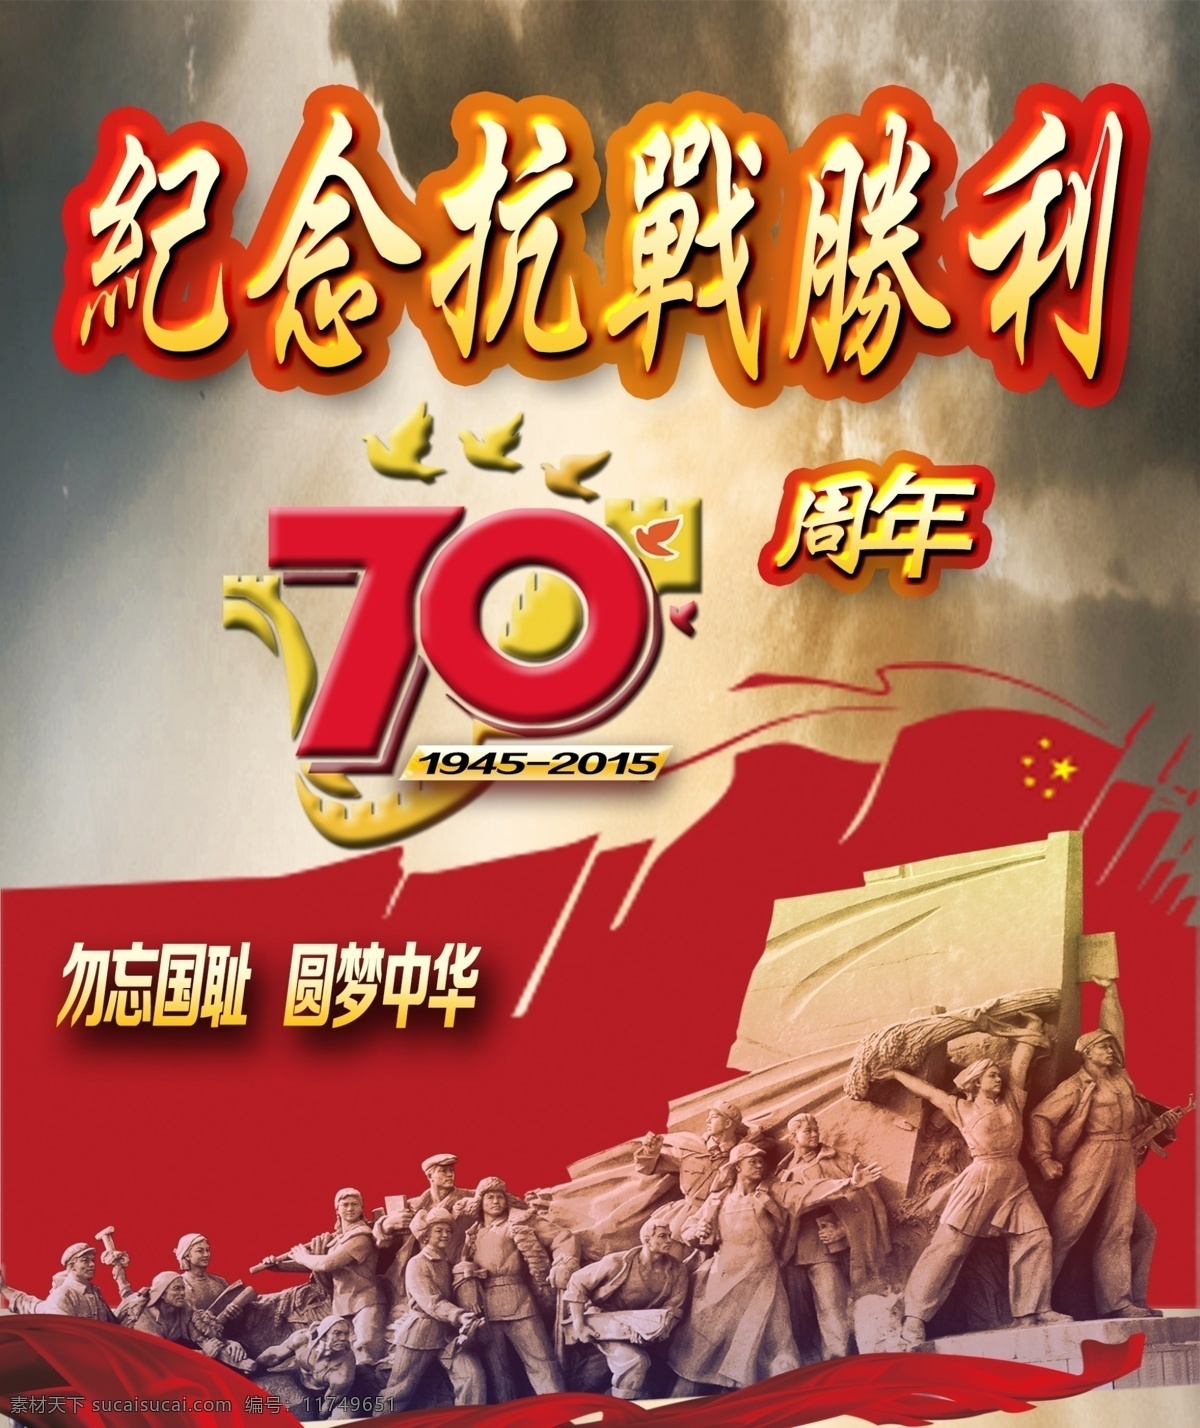 纪念 抗战 胜利 周年 70周年 长城 红旗 圆梦中华 雕像 彩带 乌云 辉煌 大气 红色